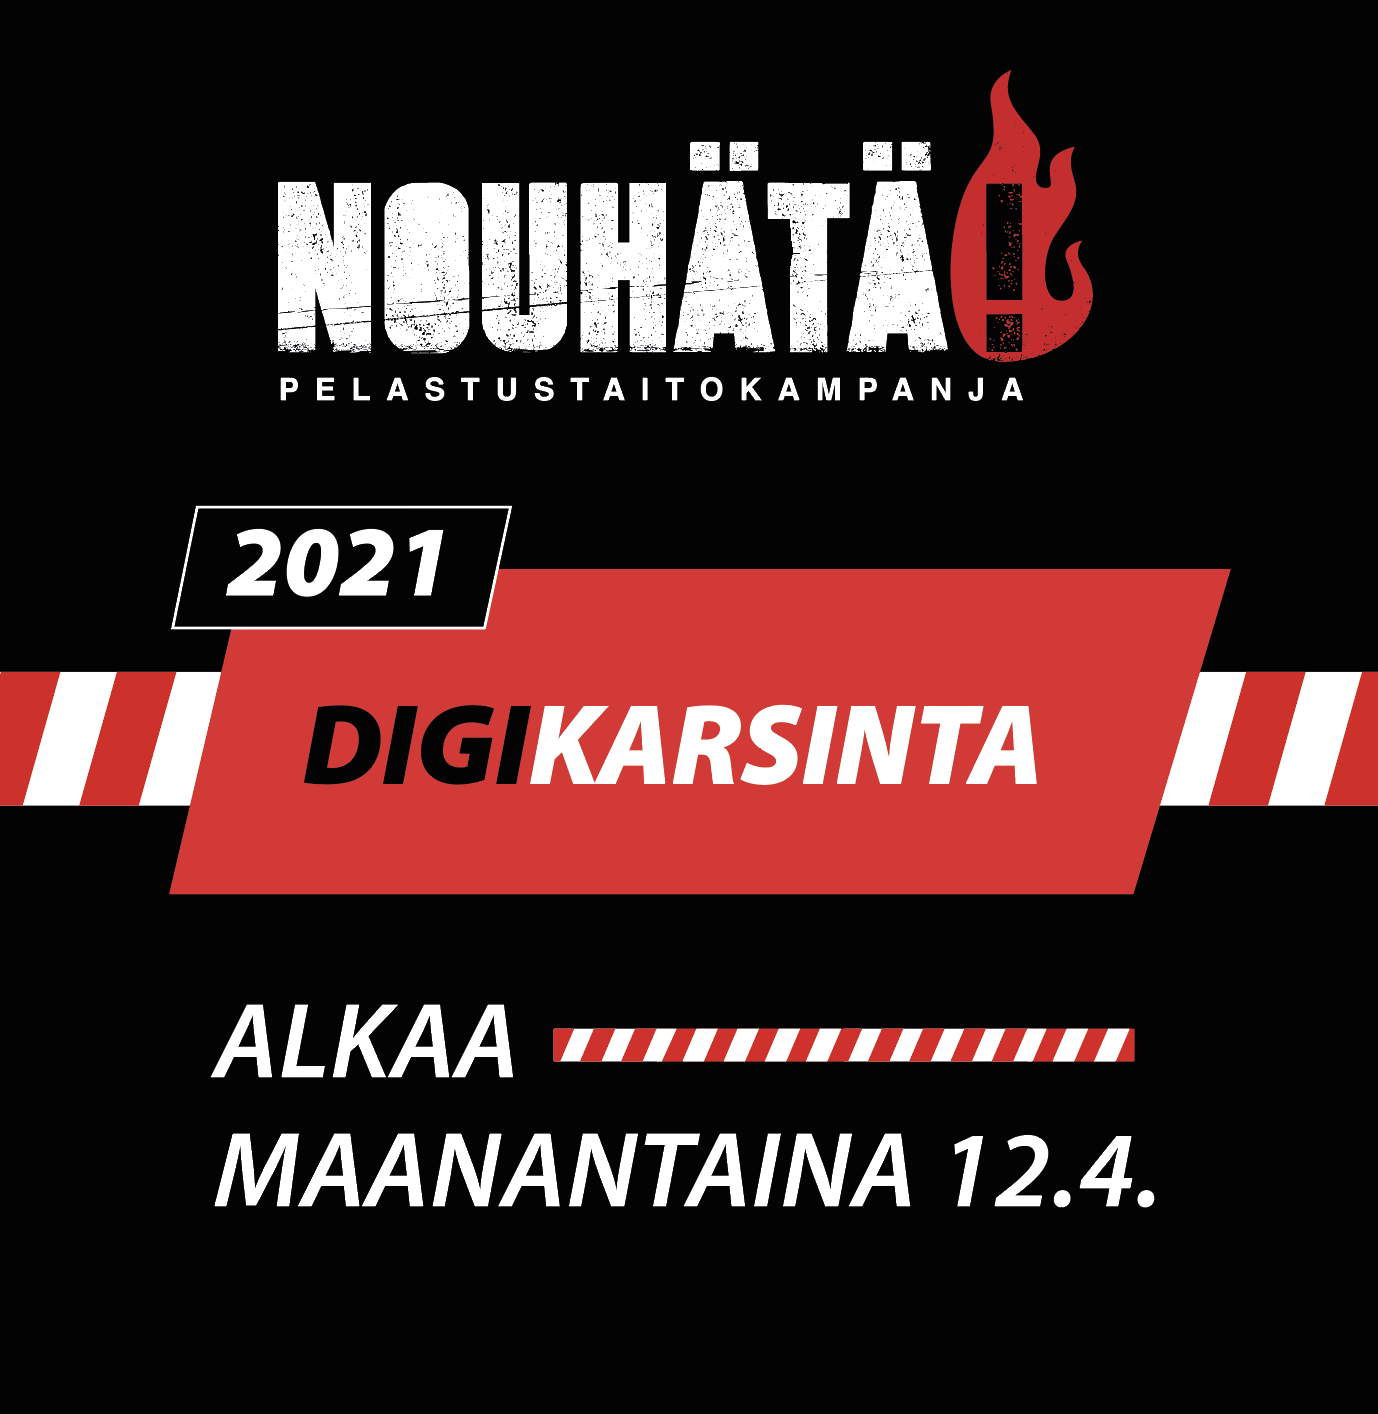 NouHätä!-kilpailun digikarsinta alkaa maanantaina 12.4.2021.